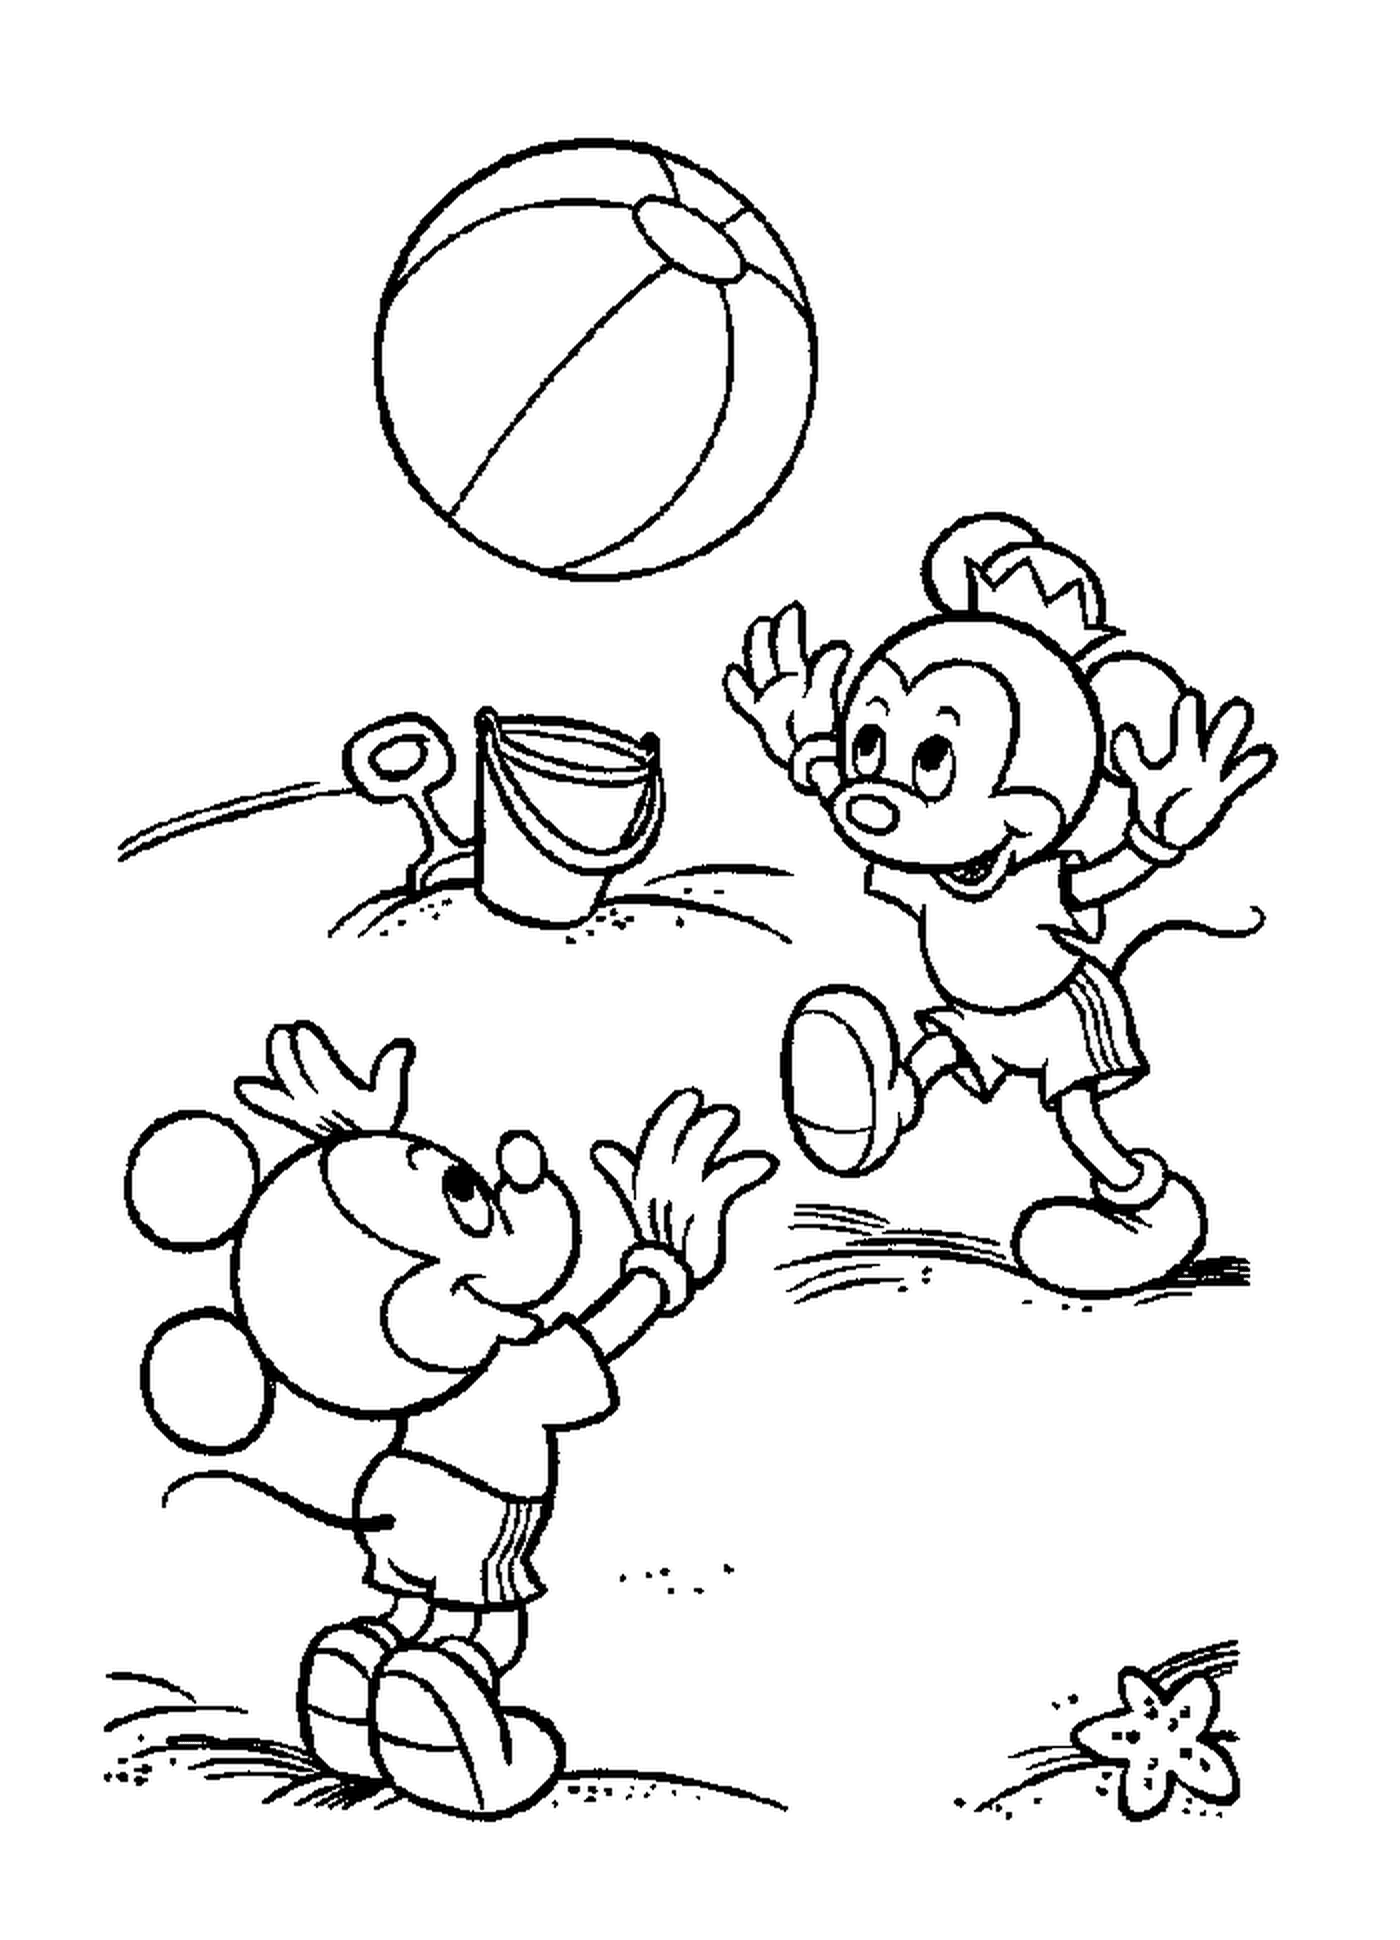  Дети Микки на пляже: Микки Маус играет в мяч 